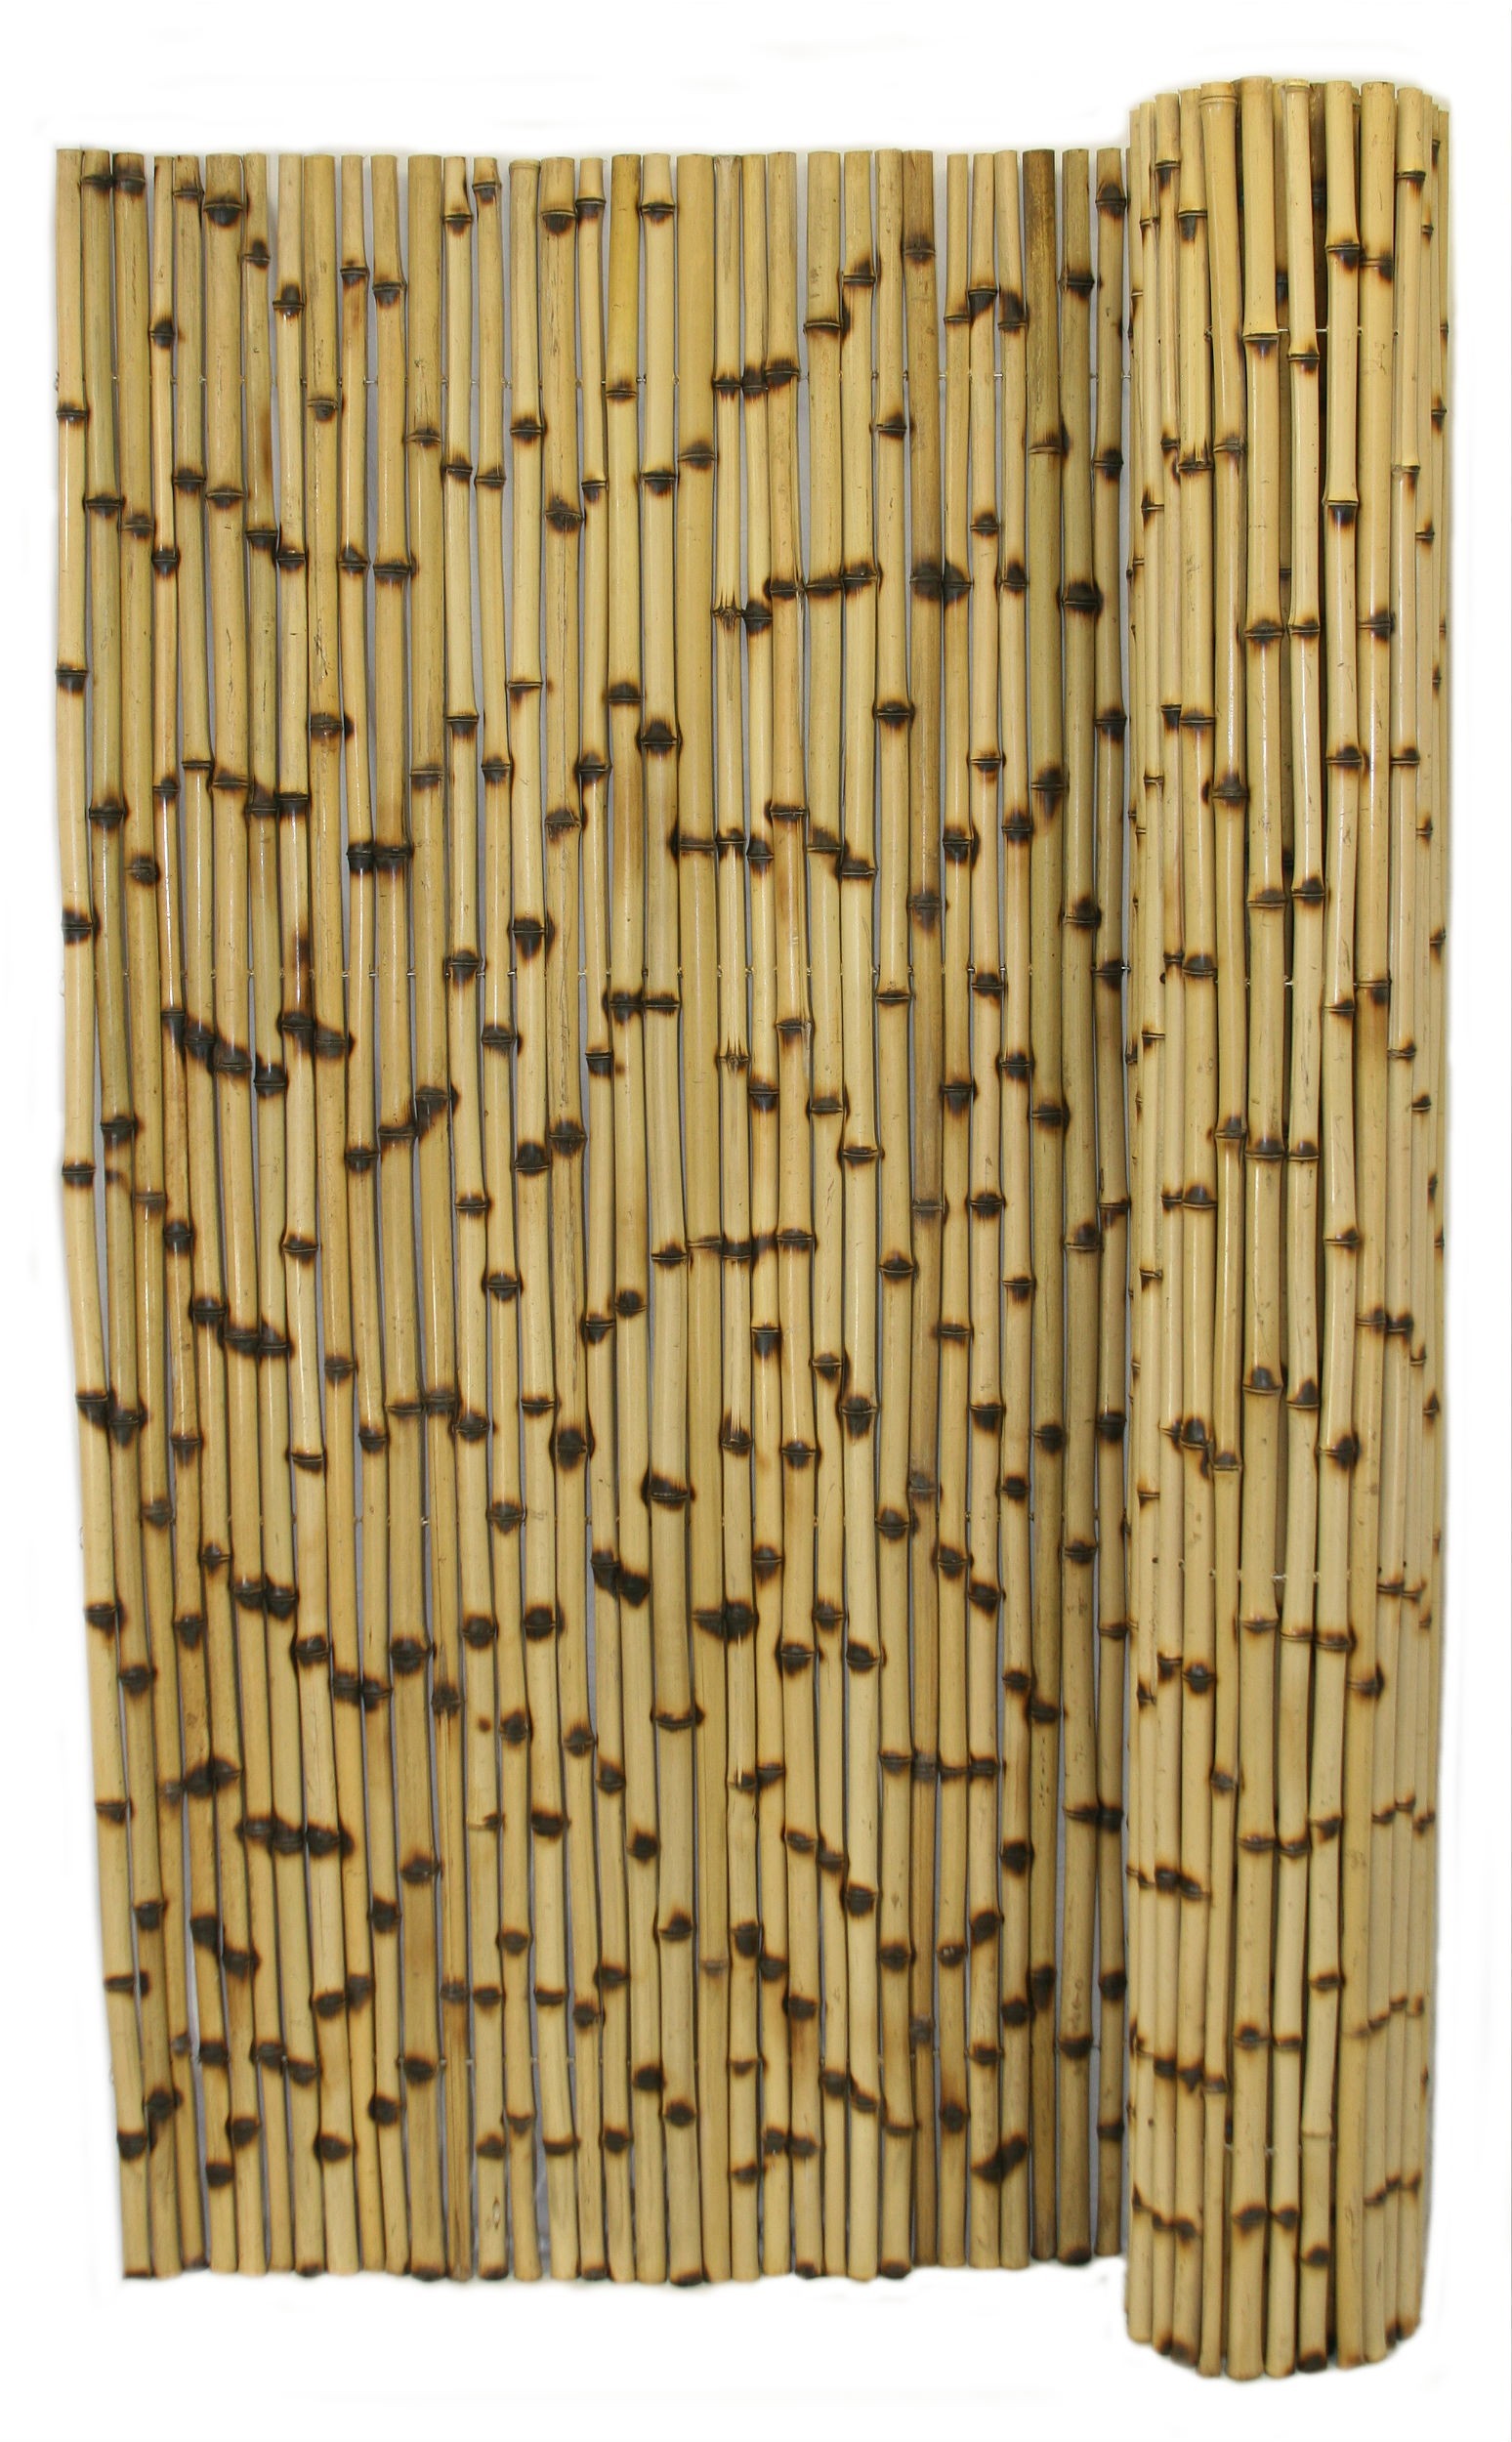 Bamboo fence photo